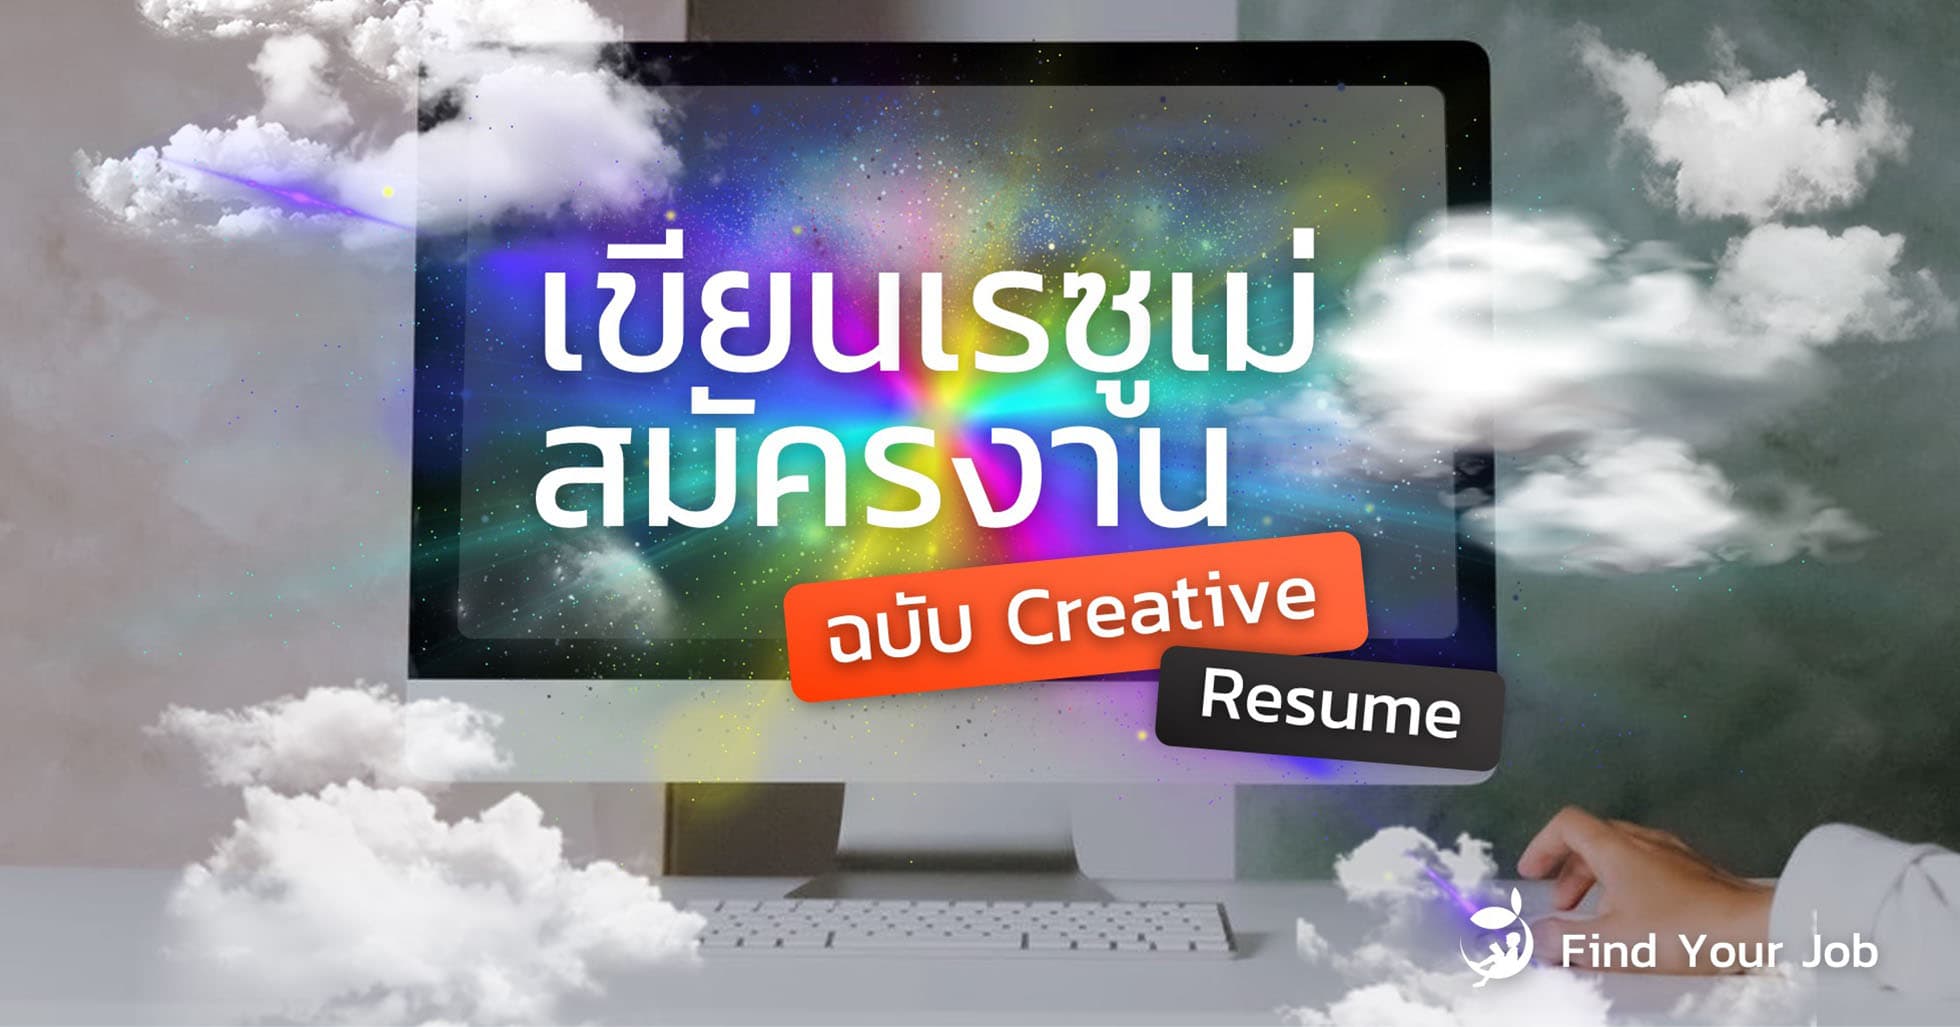 วิธีเขียนเรซูเม่สมัครงาน ฉบับ Creative Resume - Find Your Job